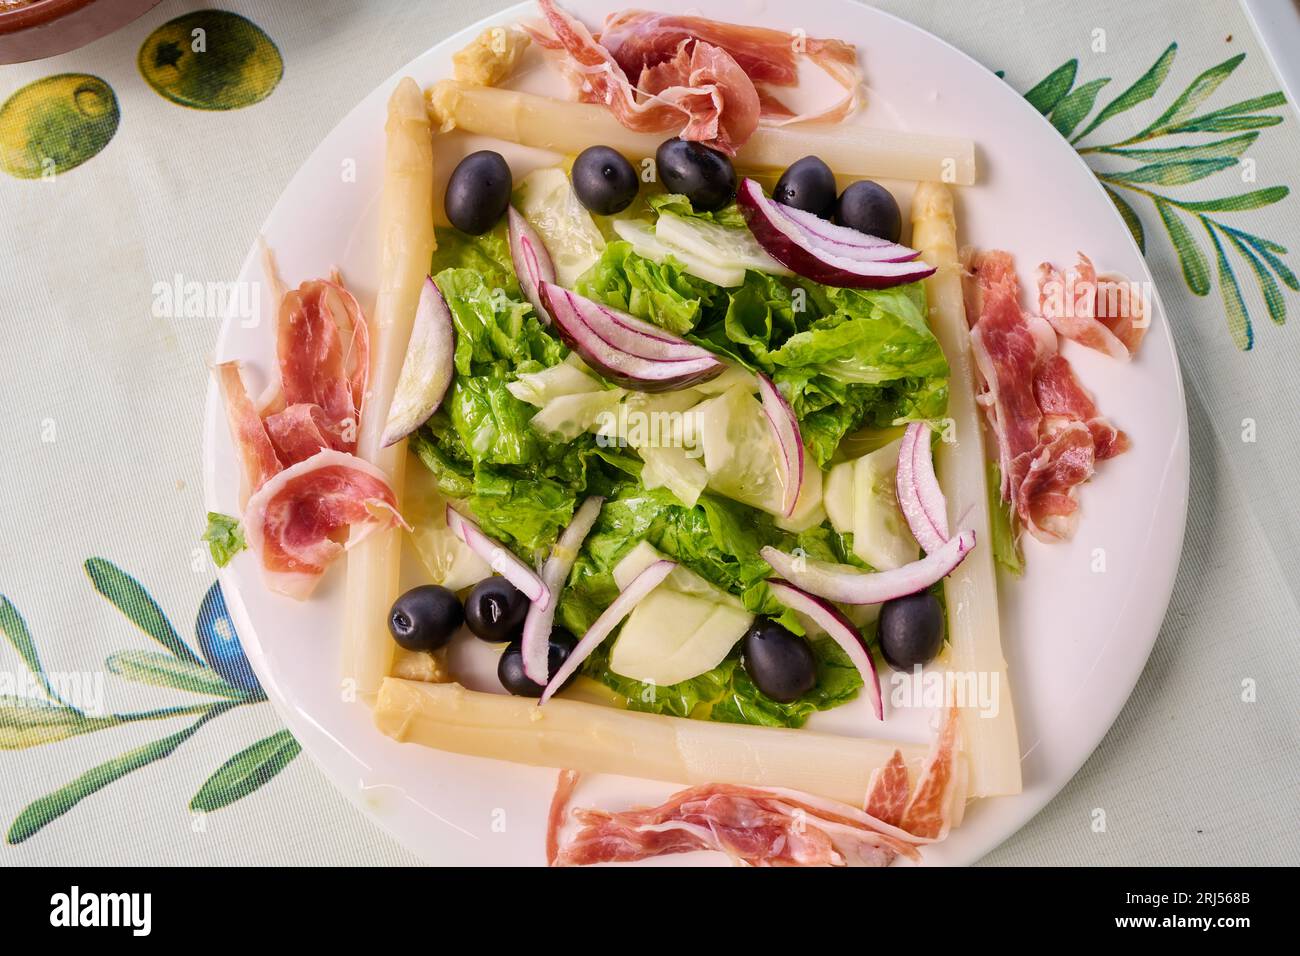 Salade de laitue, asperges, olives noires, jambon ibérique, concombre et oignon Banque D'Images